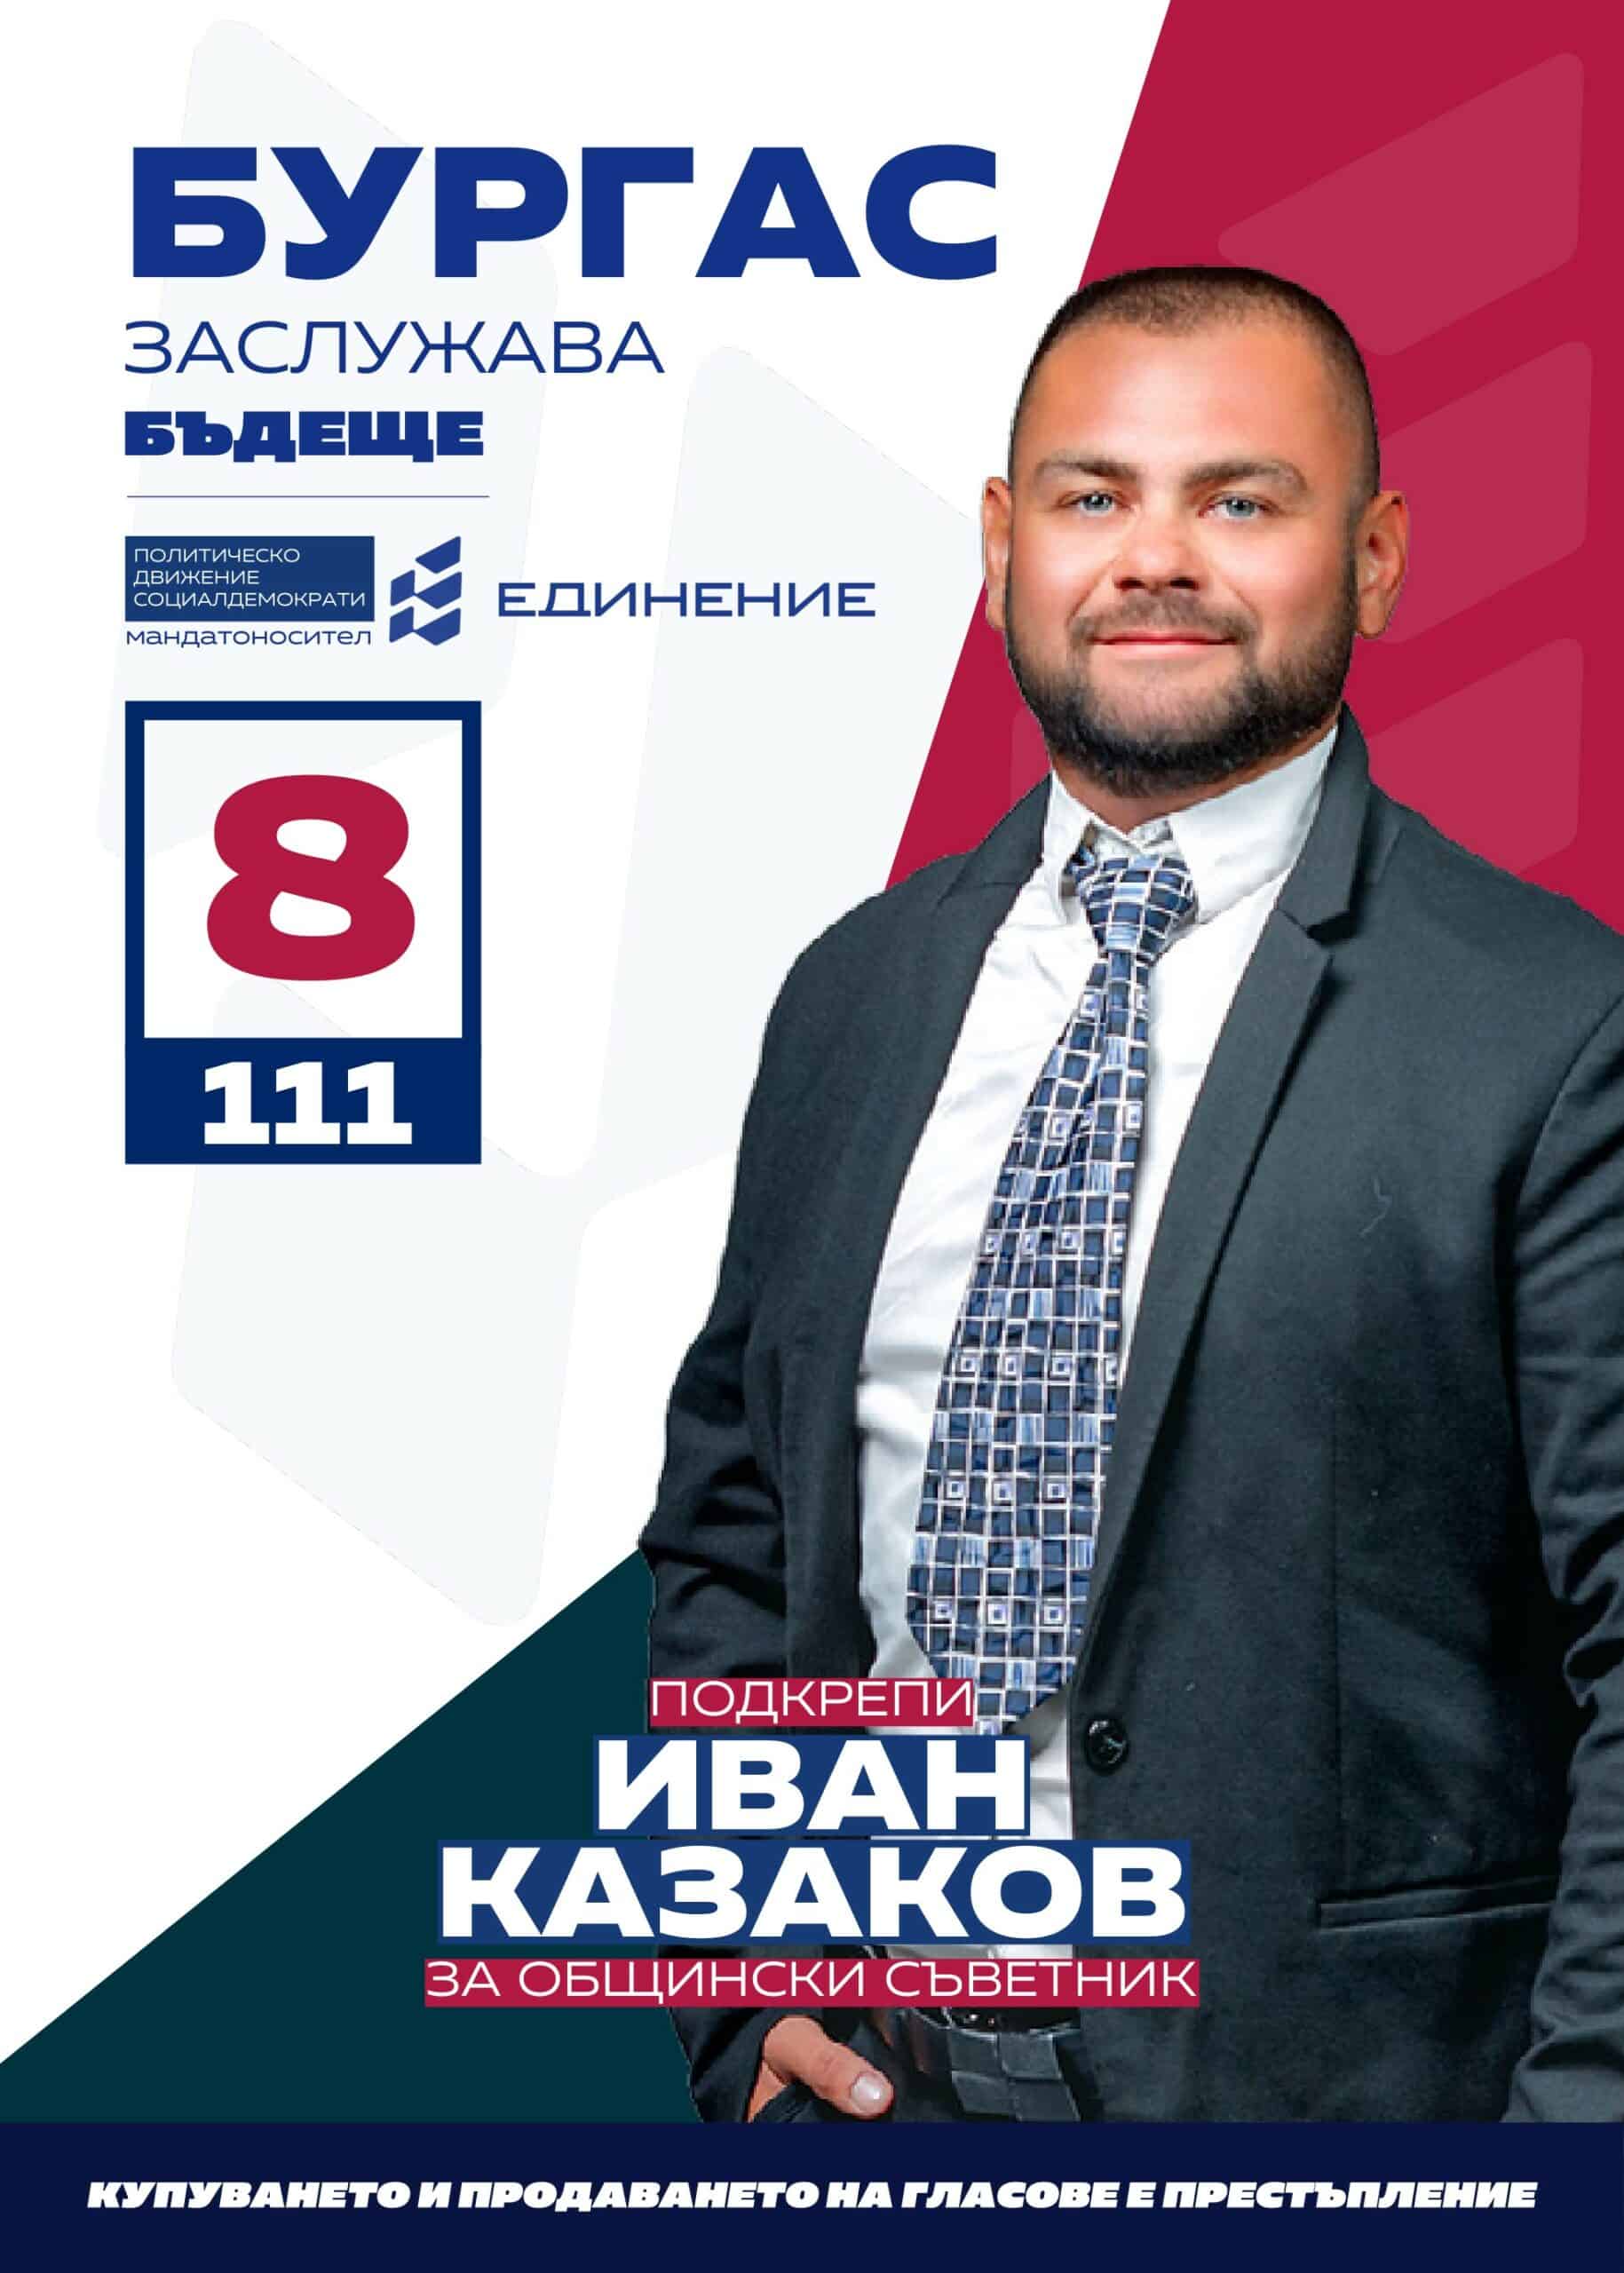 Иван Казаков – общественик
Кандидатът за общински съветник на ПП Единение“